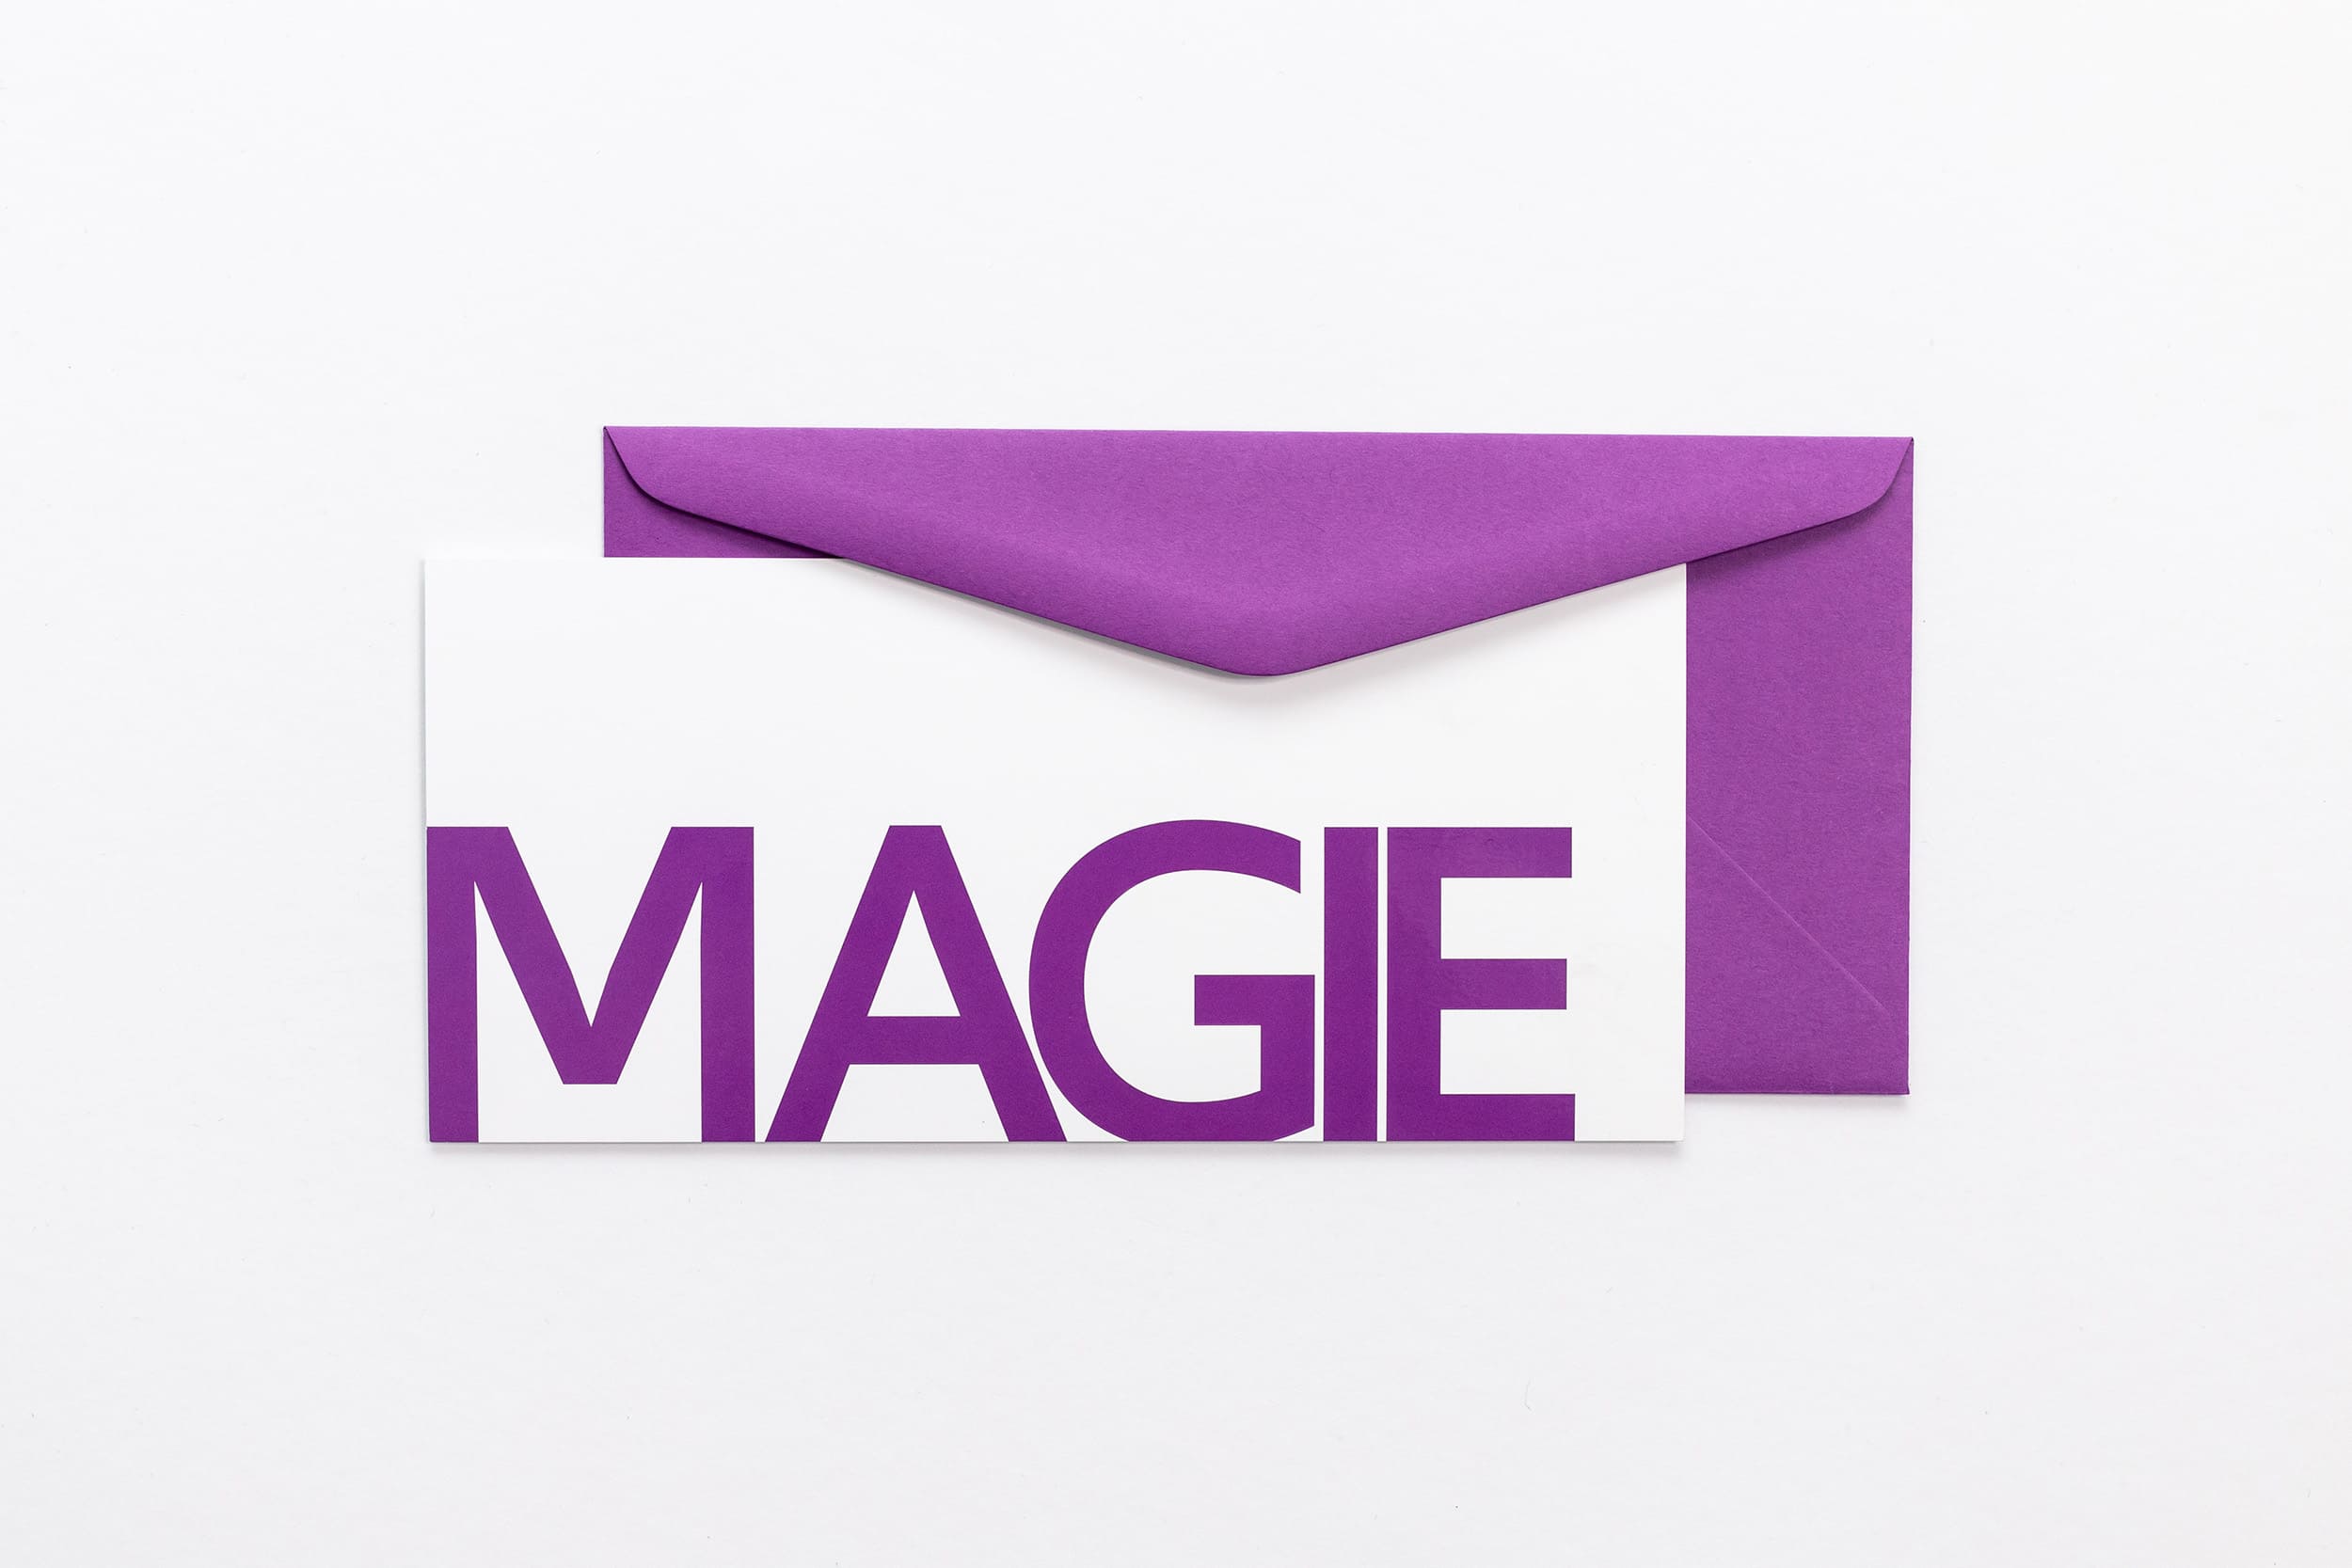 Grußkarte "MAGIE" mit violettem Briefumschlag